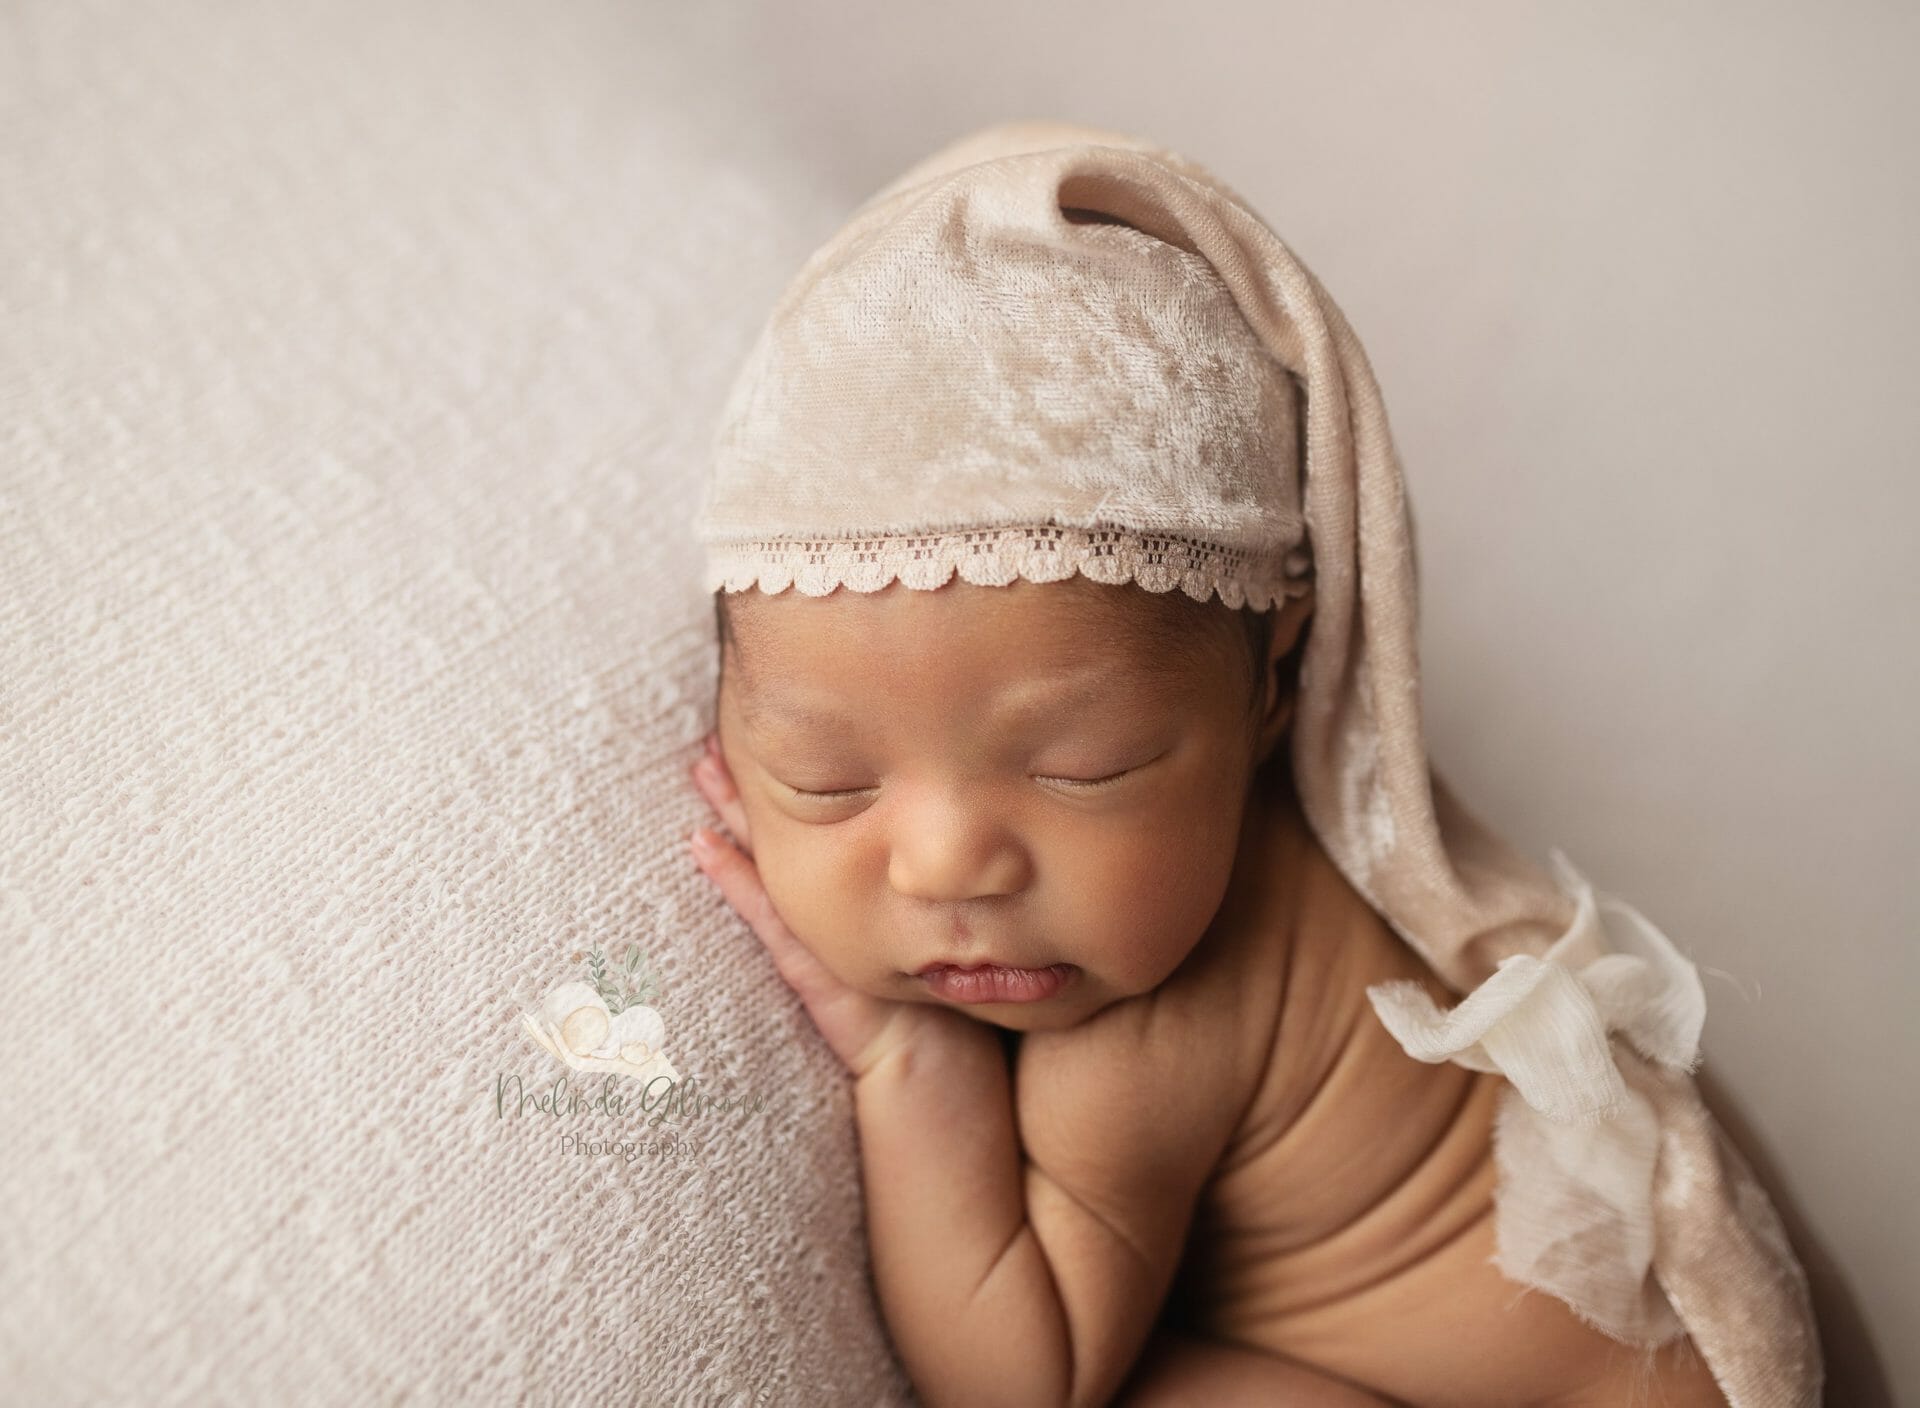 11 day old baby girl - houma, louisiana 